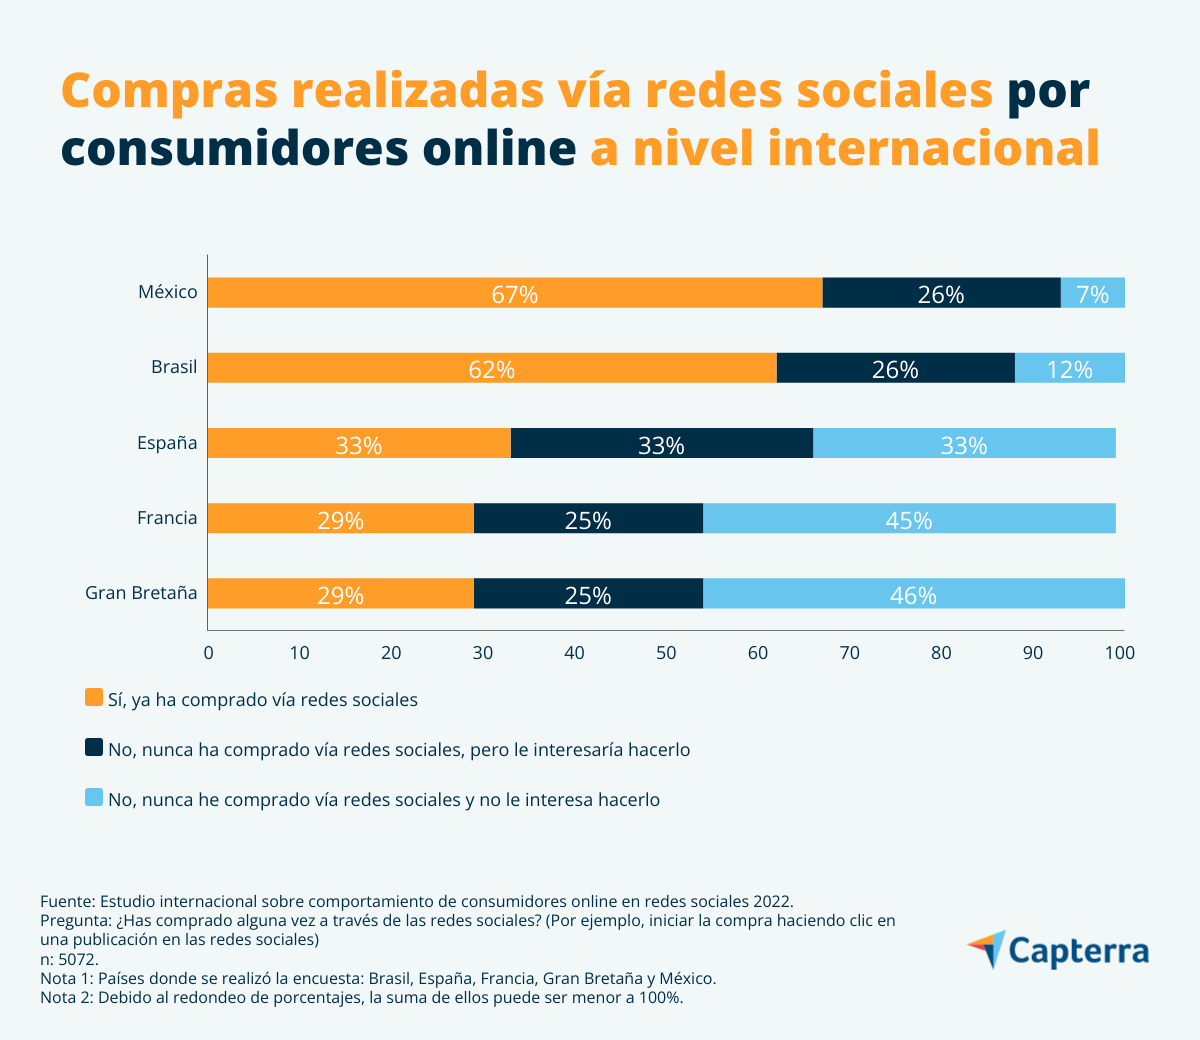 Porcentajes de consumidores online que han comprado a través de redes sociales en México, Brasil, España, Francia y Gran Bretaña